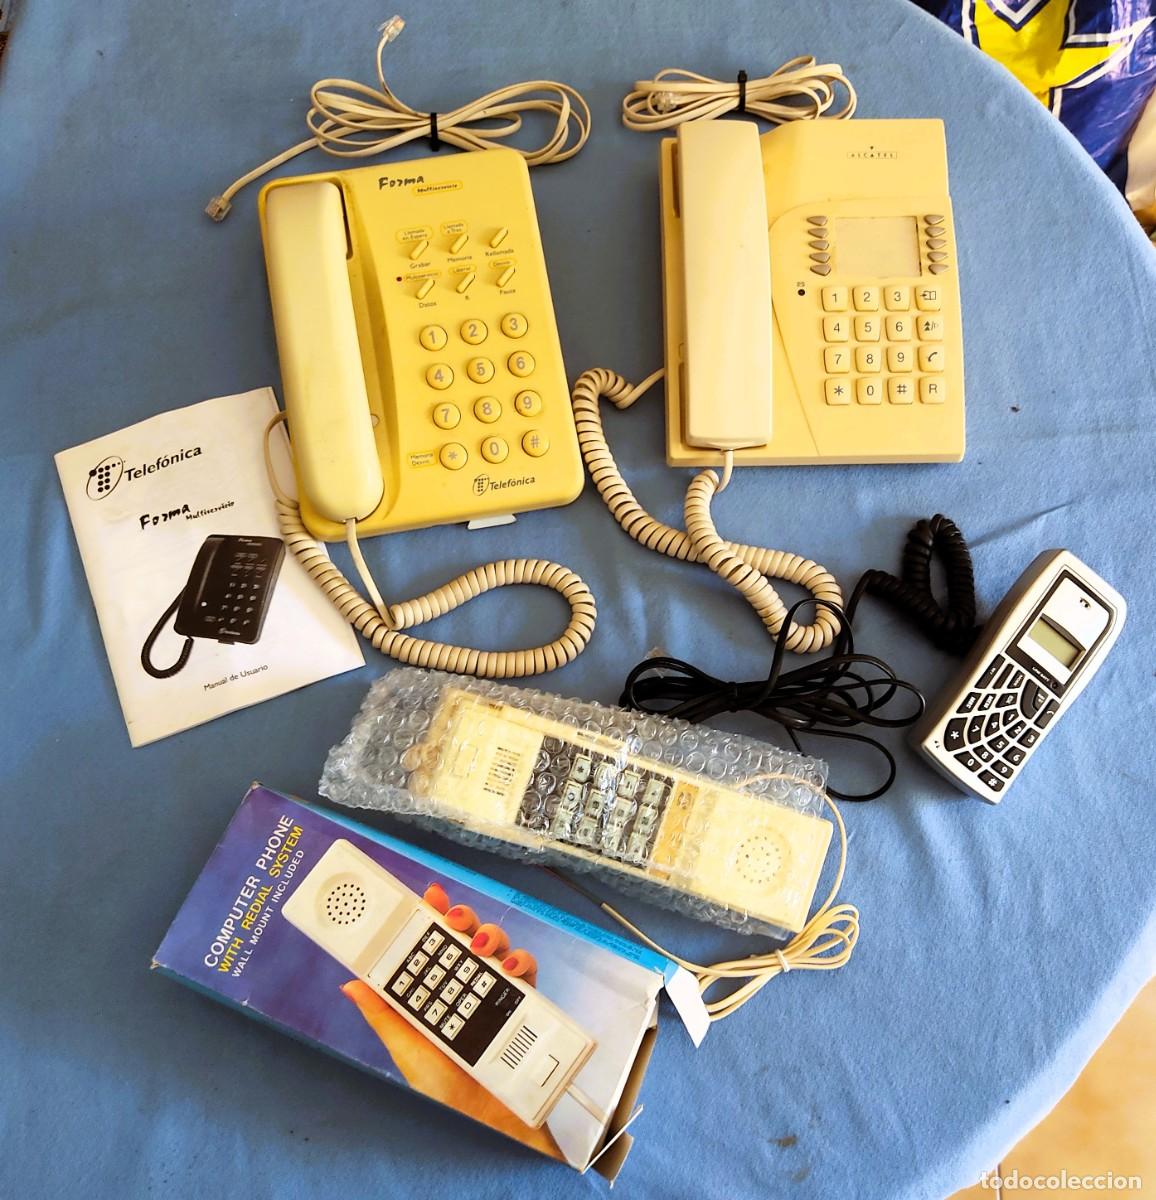 antiguo telefono fijo vintage años -ft de luxe - Compra venta en  todocoleccion